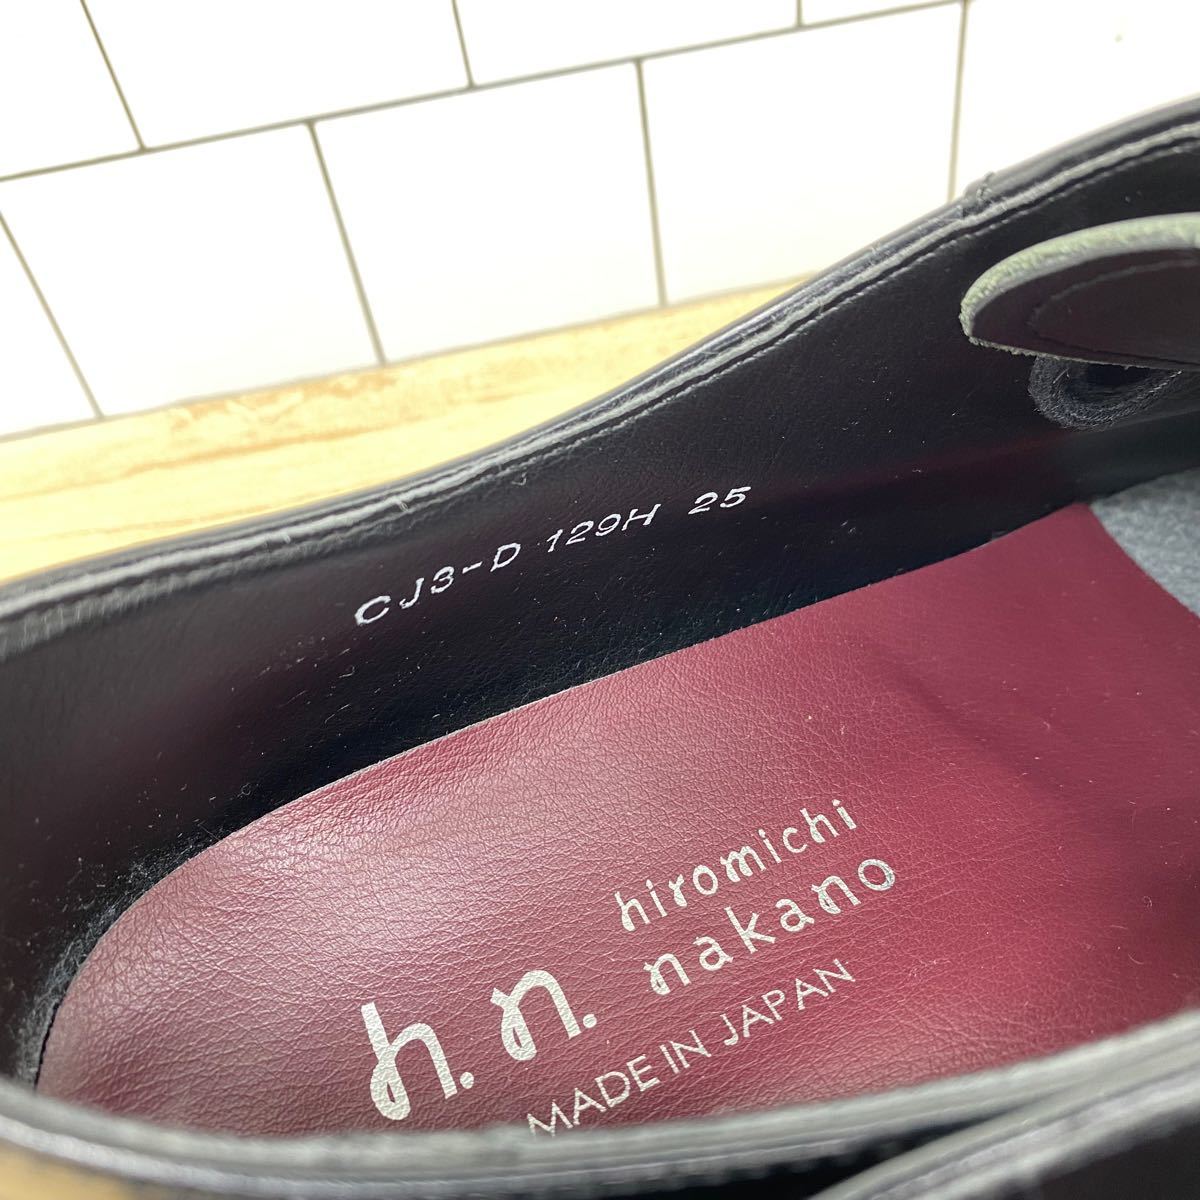 ヒロミチナカノ　メンズ革靴25.0cm　ビジネス　黒ブラック　Vチップシューズ